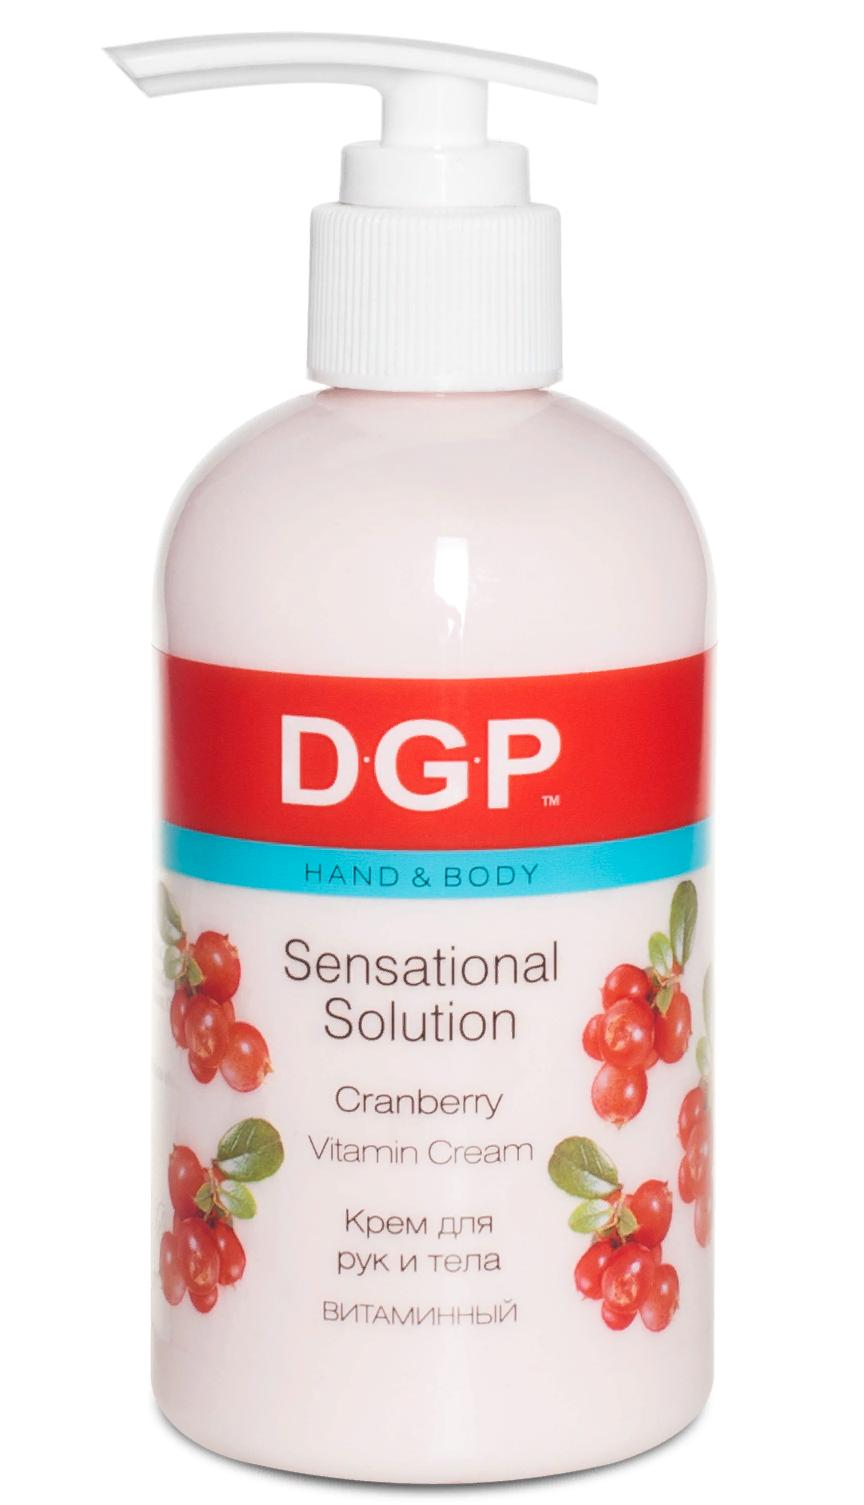 DOMIX Крем витаминный для рук и тела / Sensational Solution DGP 260 мл domix крем укрепляющий для рук и тела sensational solution dgp 260 мл